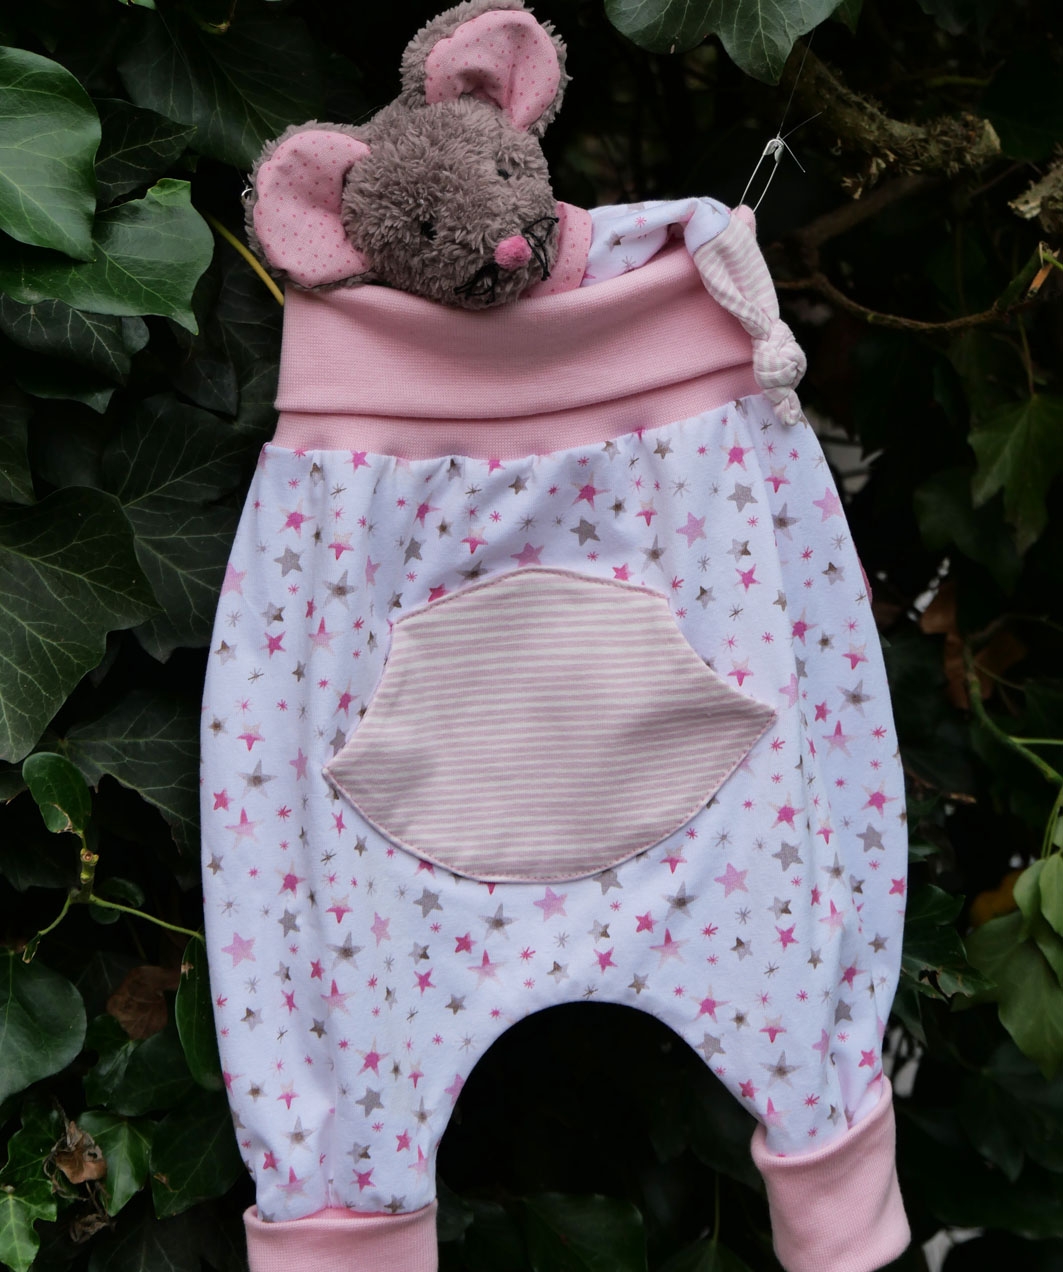 Nähset Jerseyhose natur- weiß mit rosa grauen Sternen, 0 - 6 Monate und Schmusetuch Mäuschen Fieps rosa im Set, Nähpaket